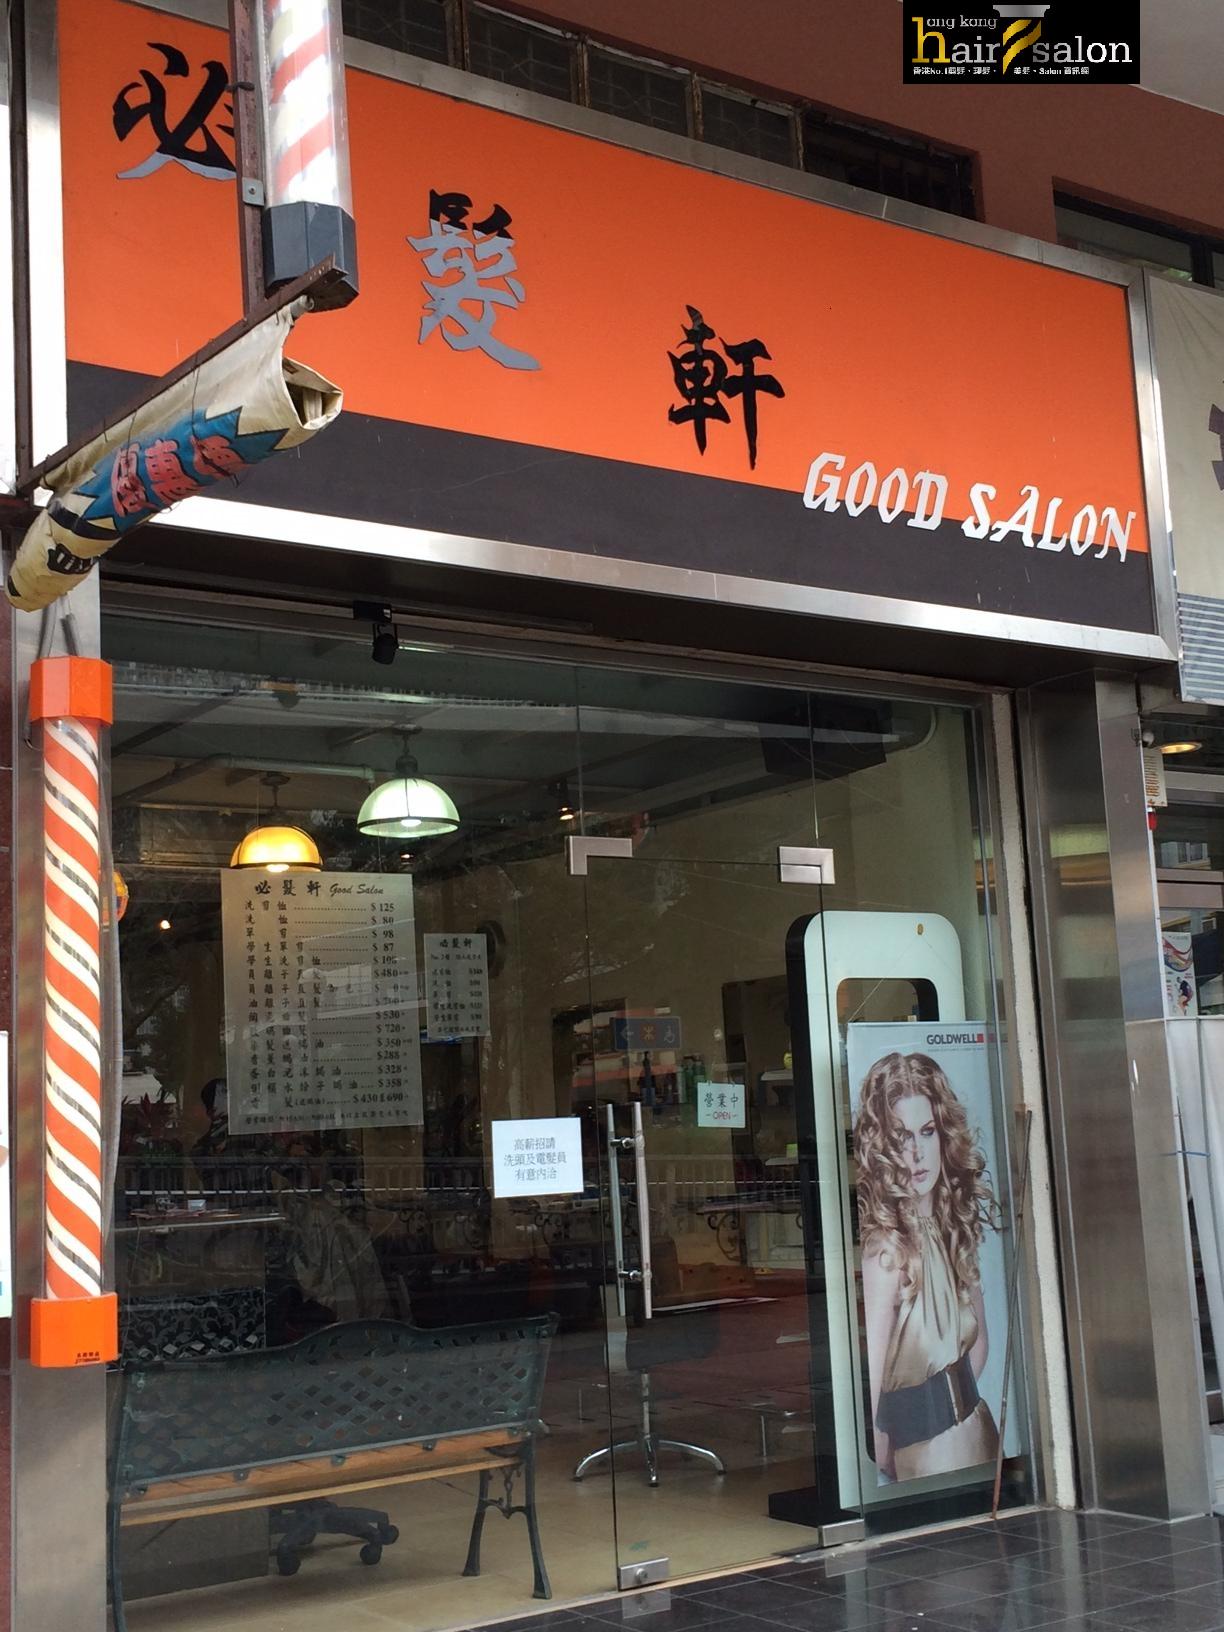 Hair Colouring: 必髮軒 Good Hair Design Salon